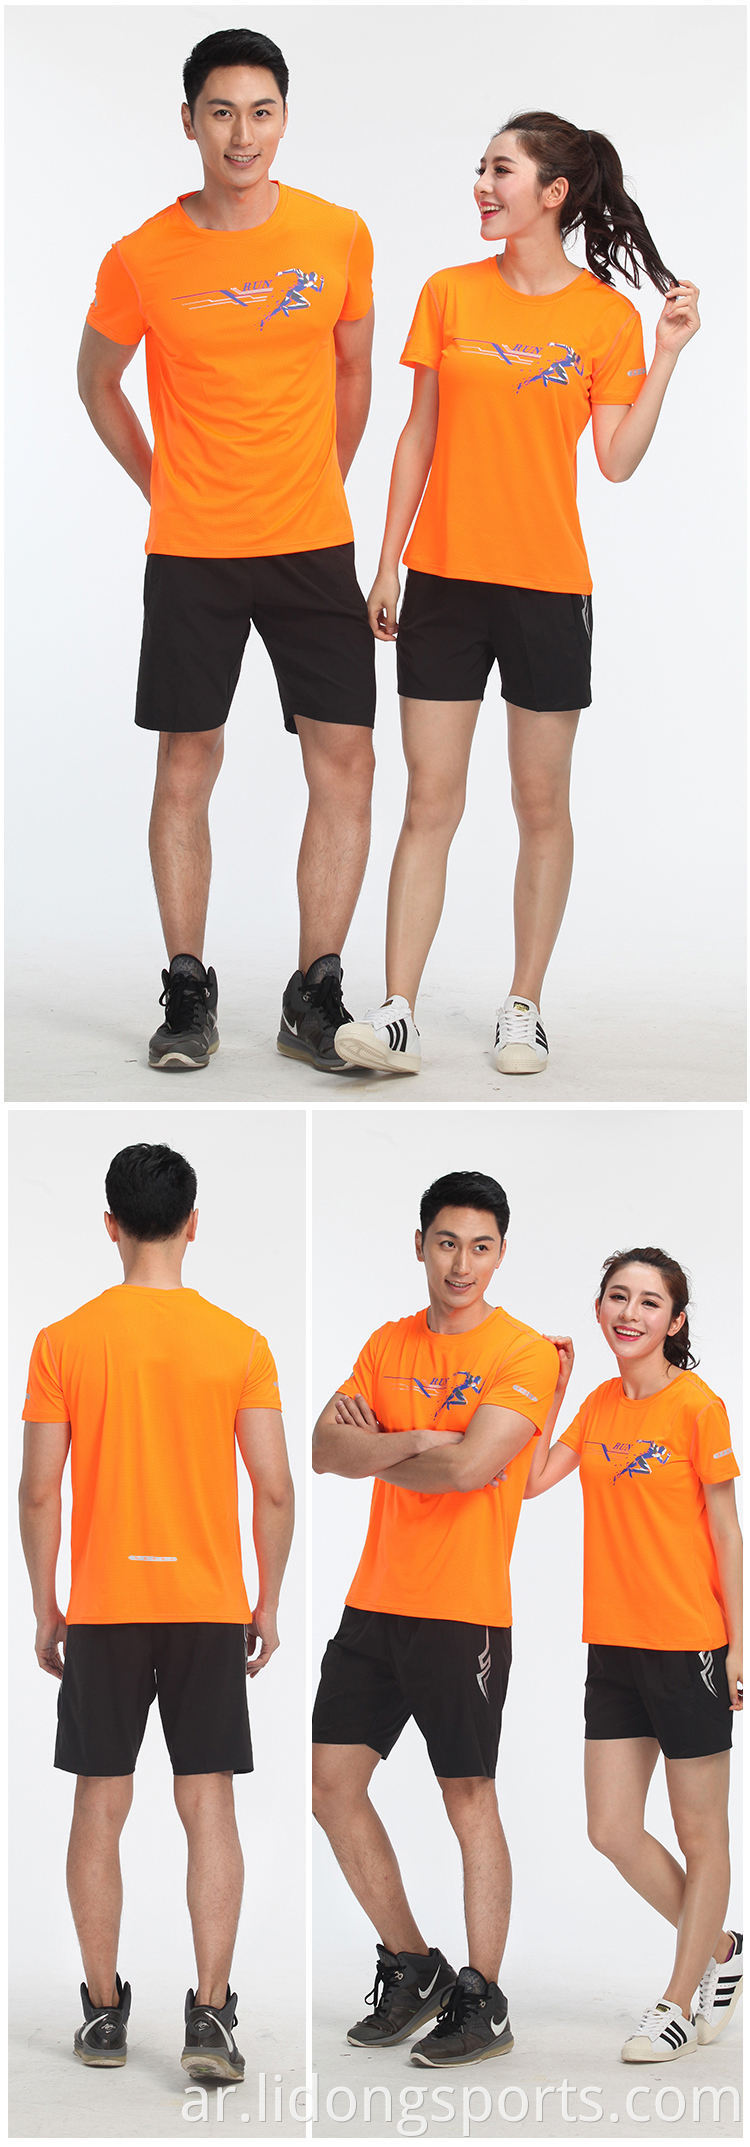 رخيصة الجملة بالجملة الصينية تي شيرت شعار مخصص الرجال الرياضة tshirt طباعة القمصان كبيرة الحجم